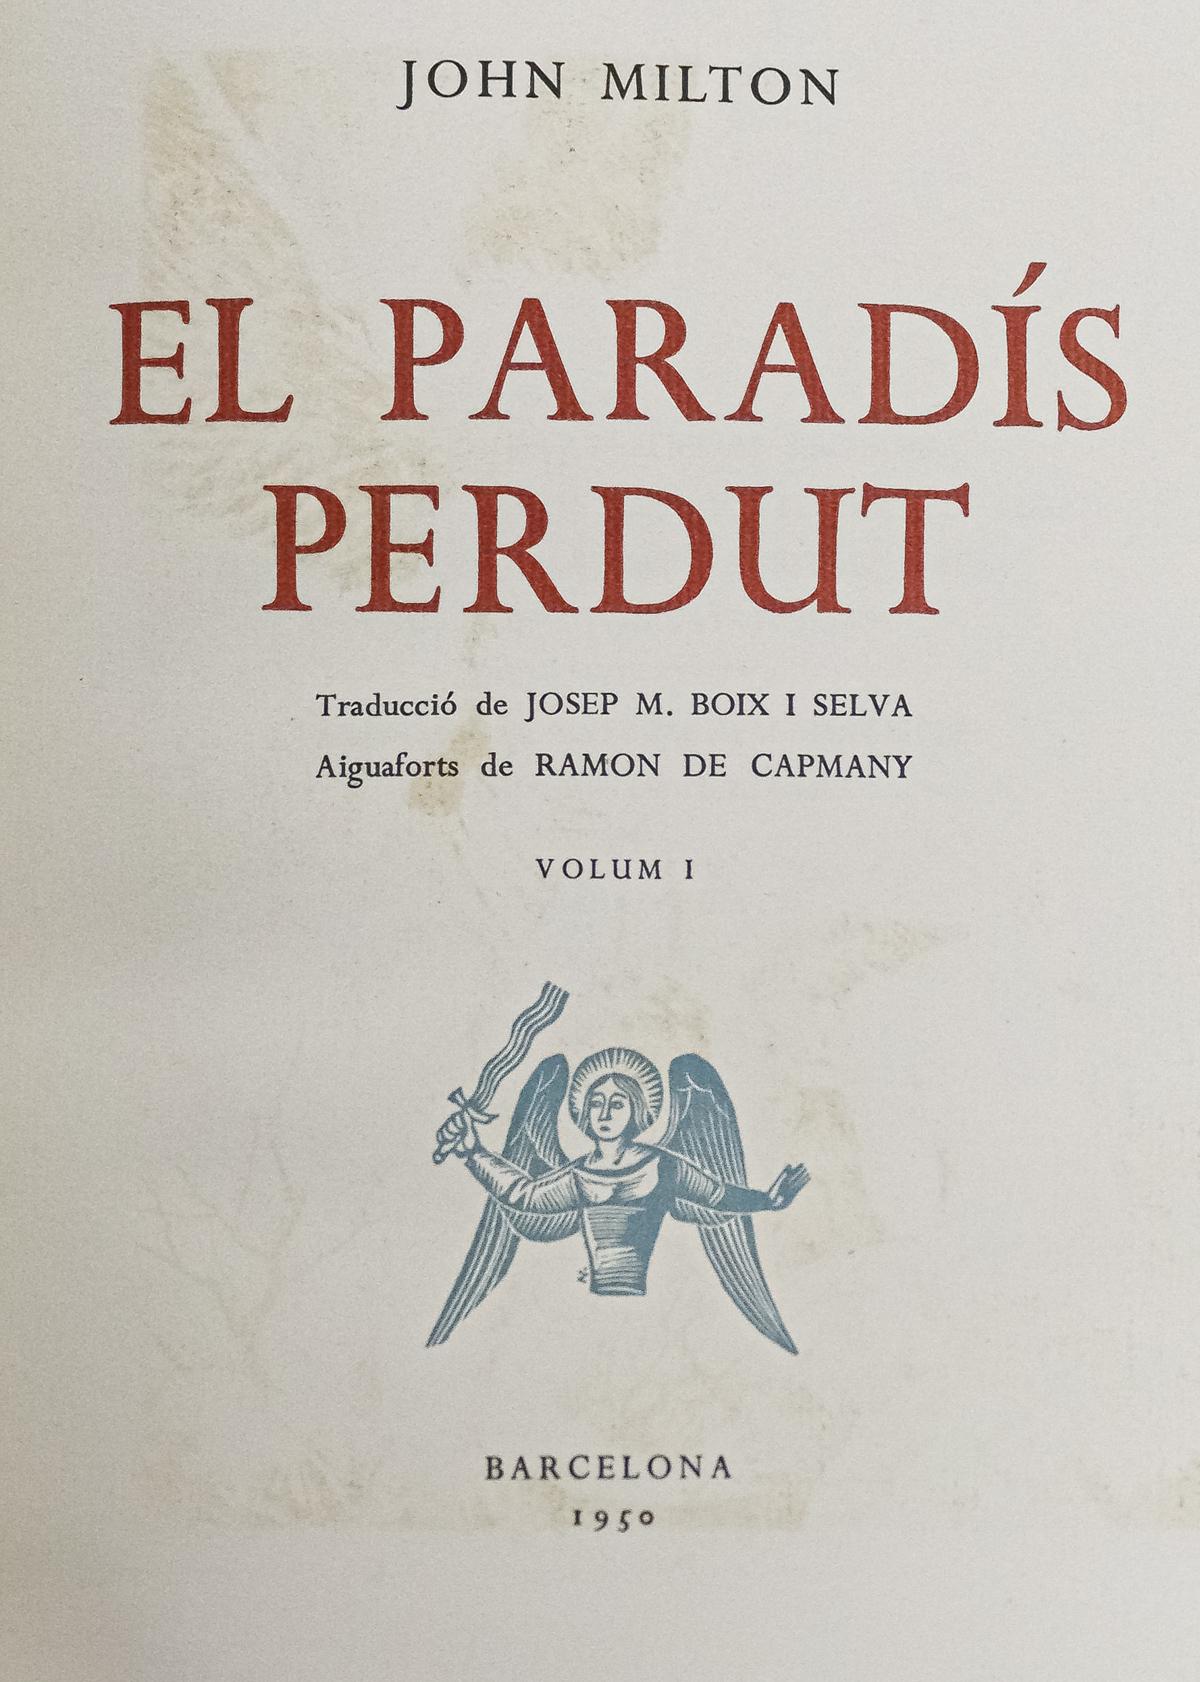 "EL PARADIS PERDUT" 